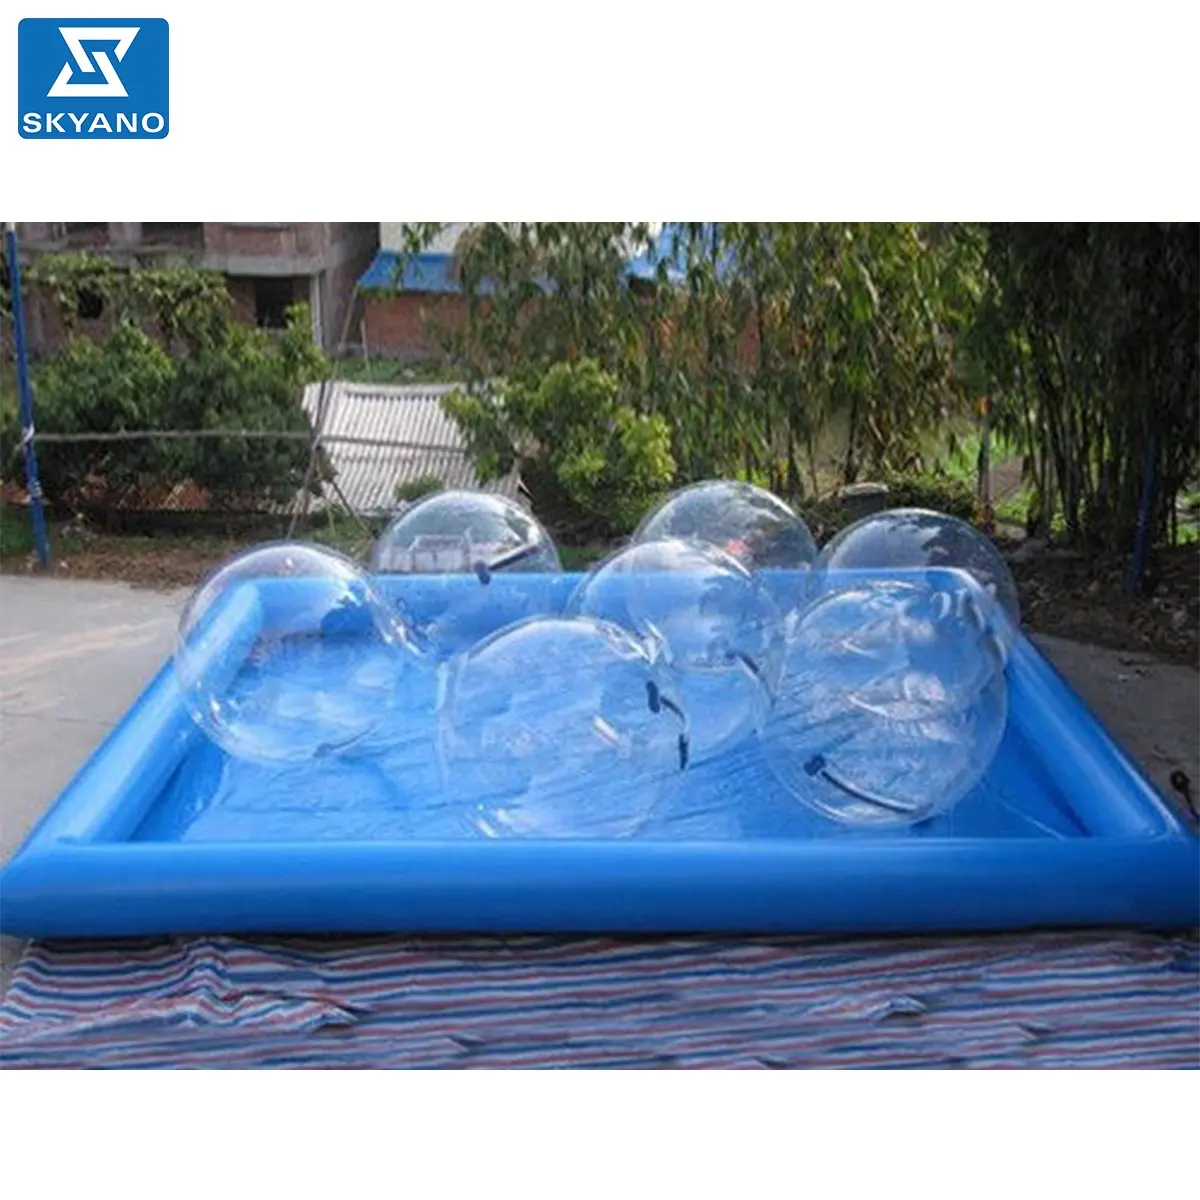 Hochwertiger aufblasbarer Pool Wasserpark Pool Pool für Zorb Ball/Wasser Walking Ball/Kinder boot